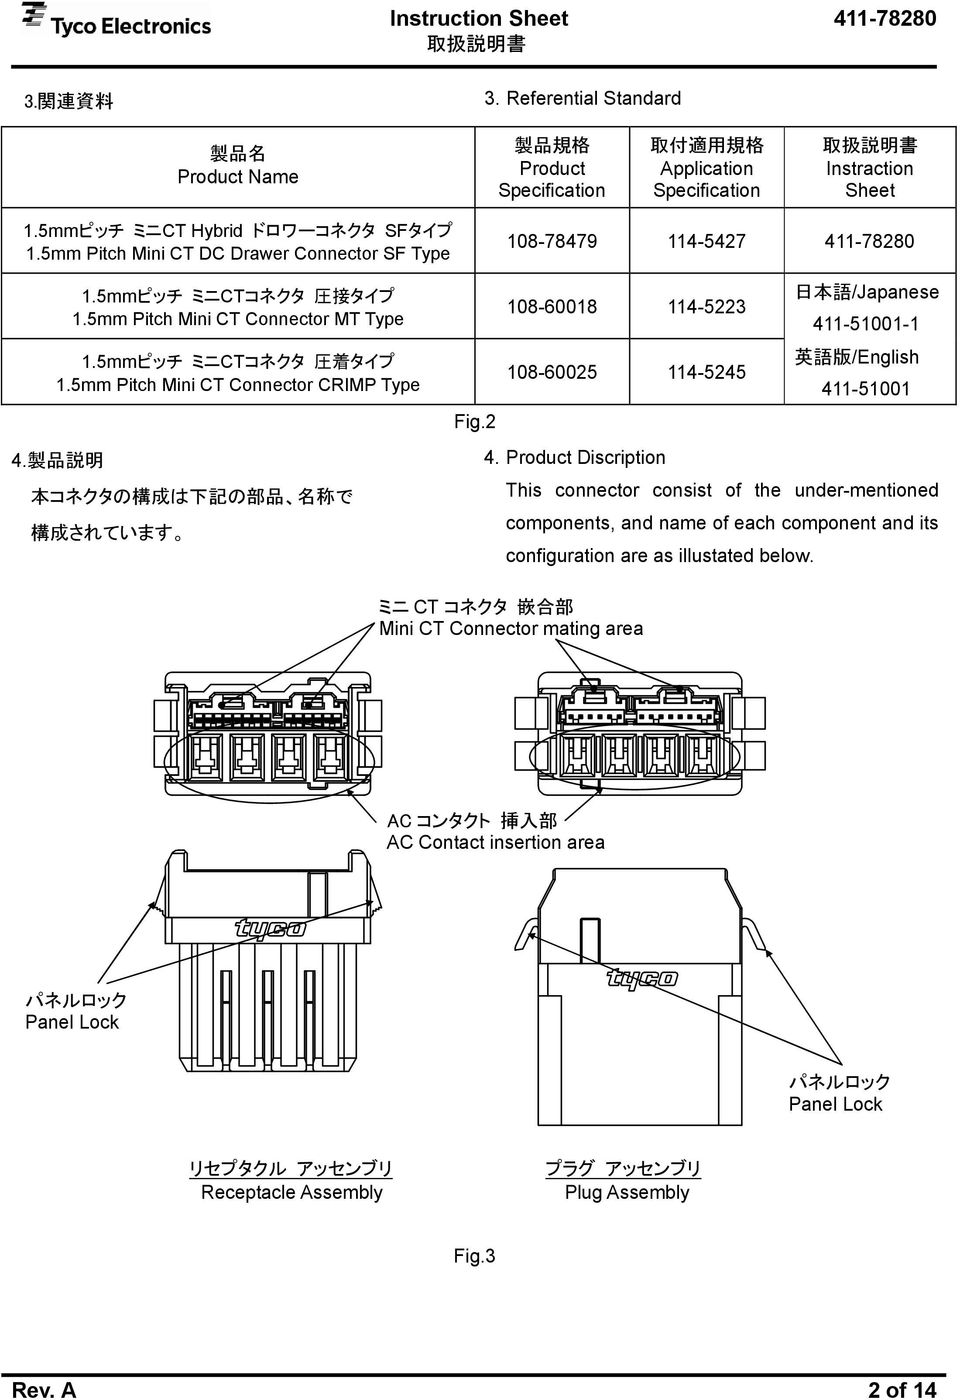 5mm Pitch Mini CT Connector CRIMP Type 4. 製 品 説 明 本 コネクタの 構 成 は 下 記 の 部 品 名 称 で 構 成 されています 日 本 語 /Japanese 108-60018 114-5223 411-51001-1 英 語 版 /English 108-60025 114-5245 411-51001 Fig.2 4.